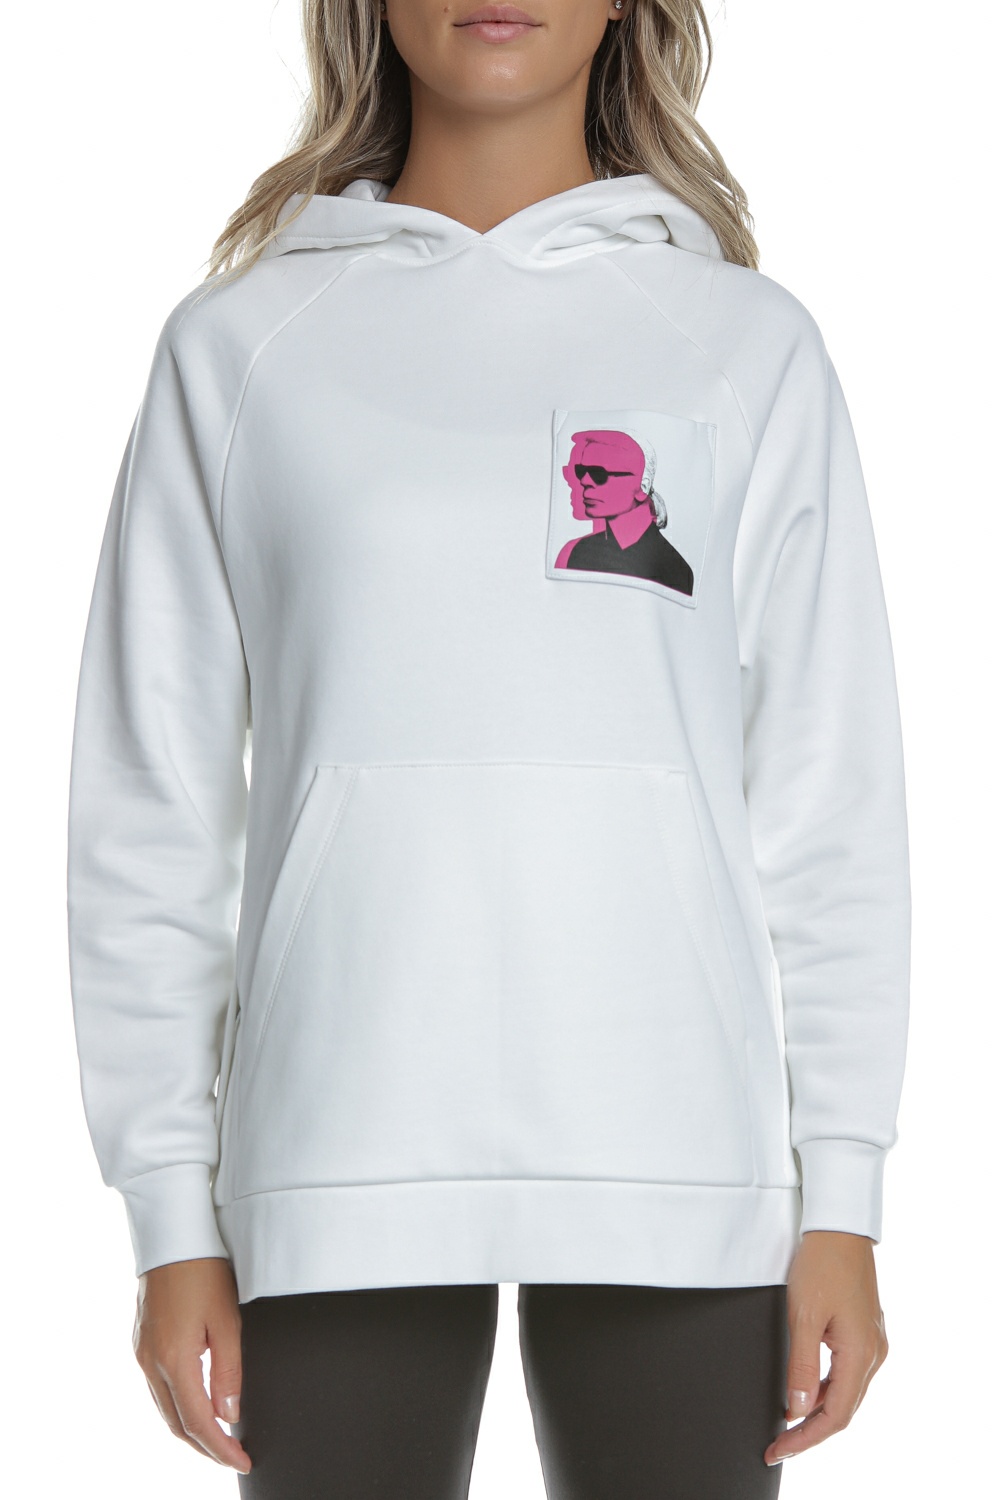 Γυναικεία/Ρούχα/Μπλούζες/Φούτερ KARL LAGERFELD - Γυναικεία φούτερ μπλούζα KARL LAGERFELD Karl Legend Print λευκή